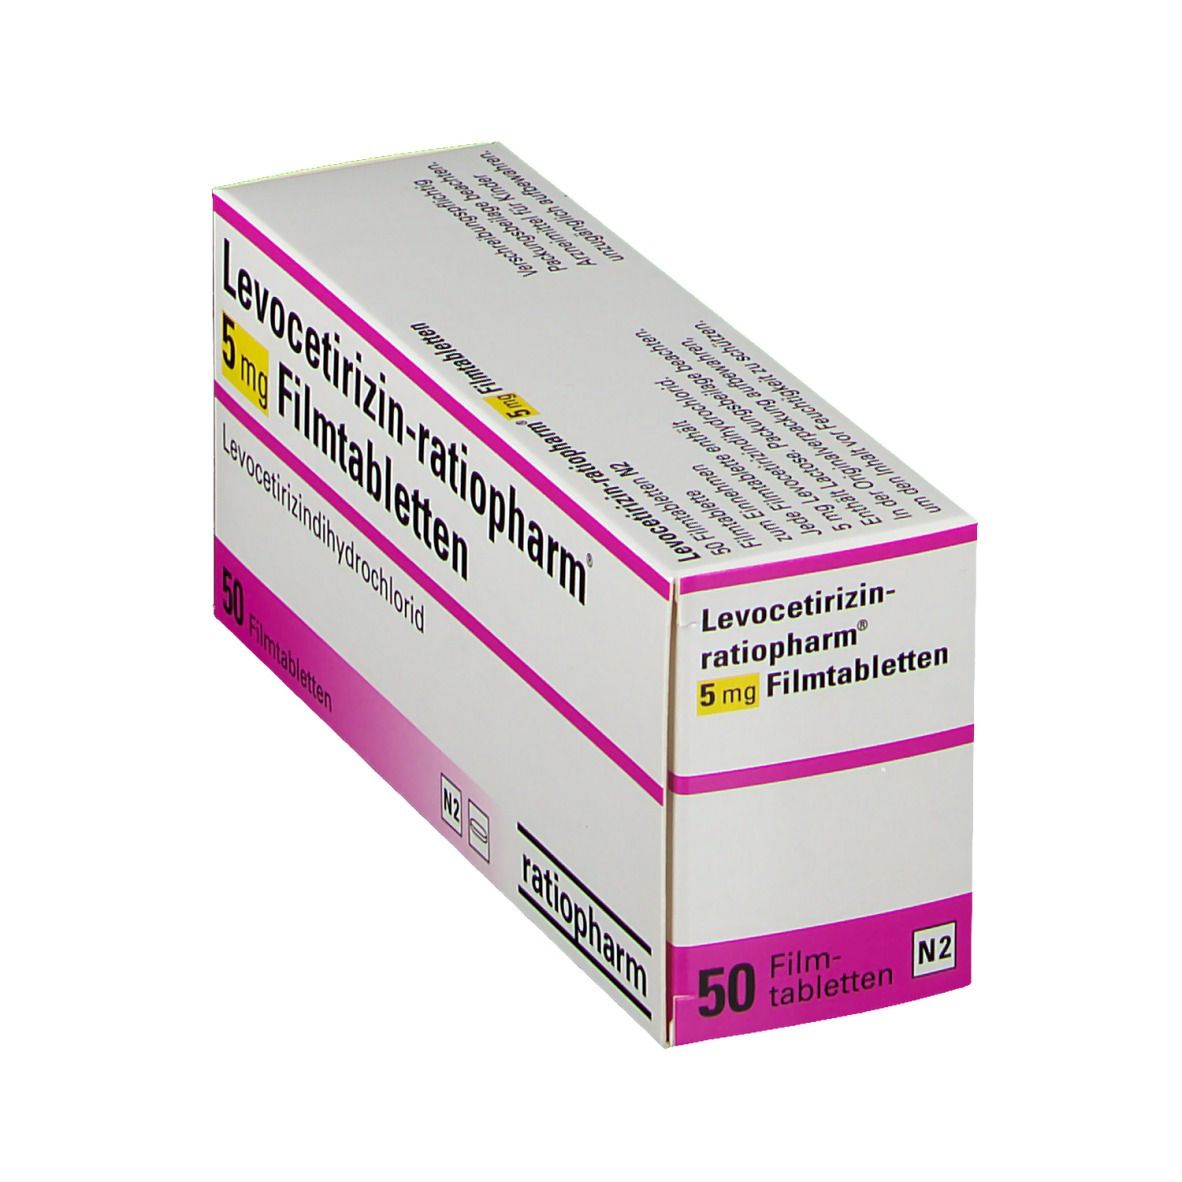 Levocetirizin-ratiopharm® 5 mg Filmtabletten